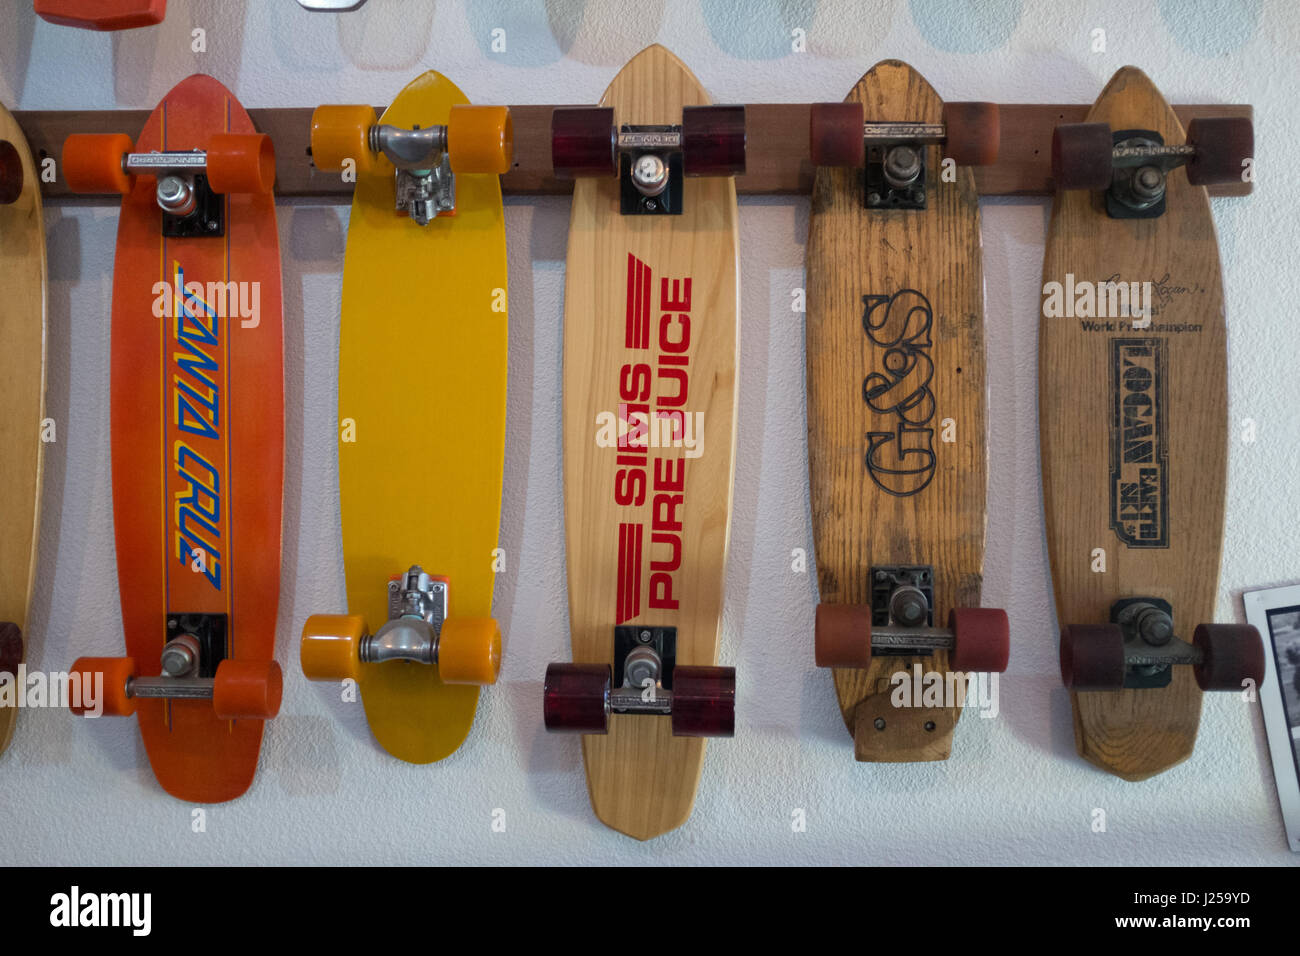 Skateboard memorabilia at the Skateboard Museum in Morro Bay, California Stock Photo